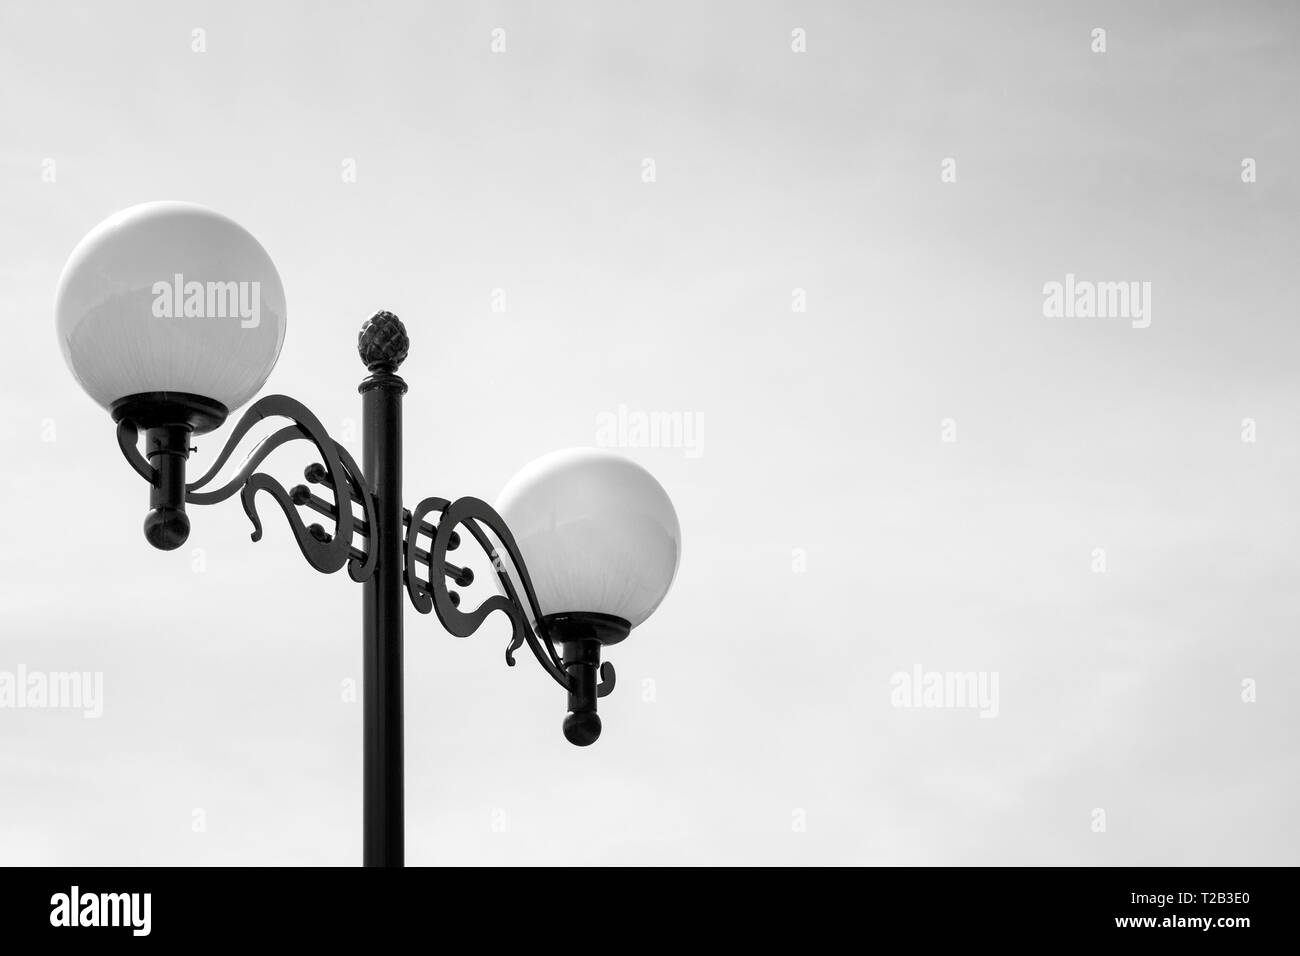 Deux lampes sur pied de lampe noir. Photo en noir et blanc. Un minimum de détails. Banque D'Images